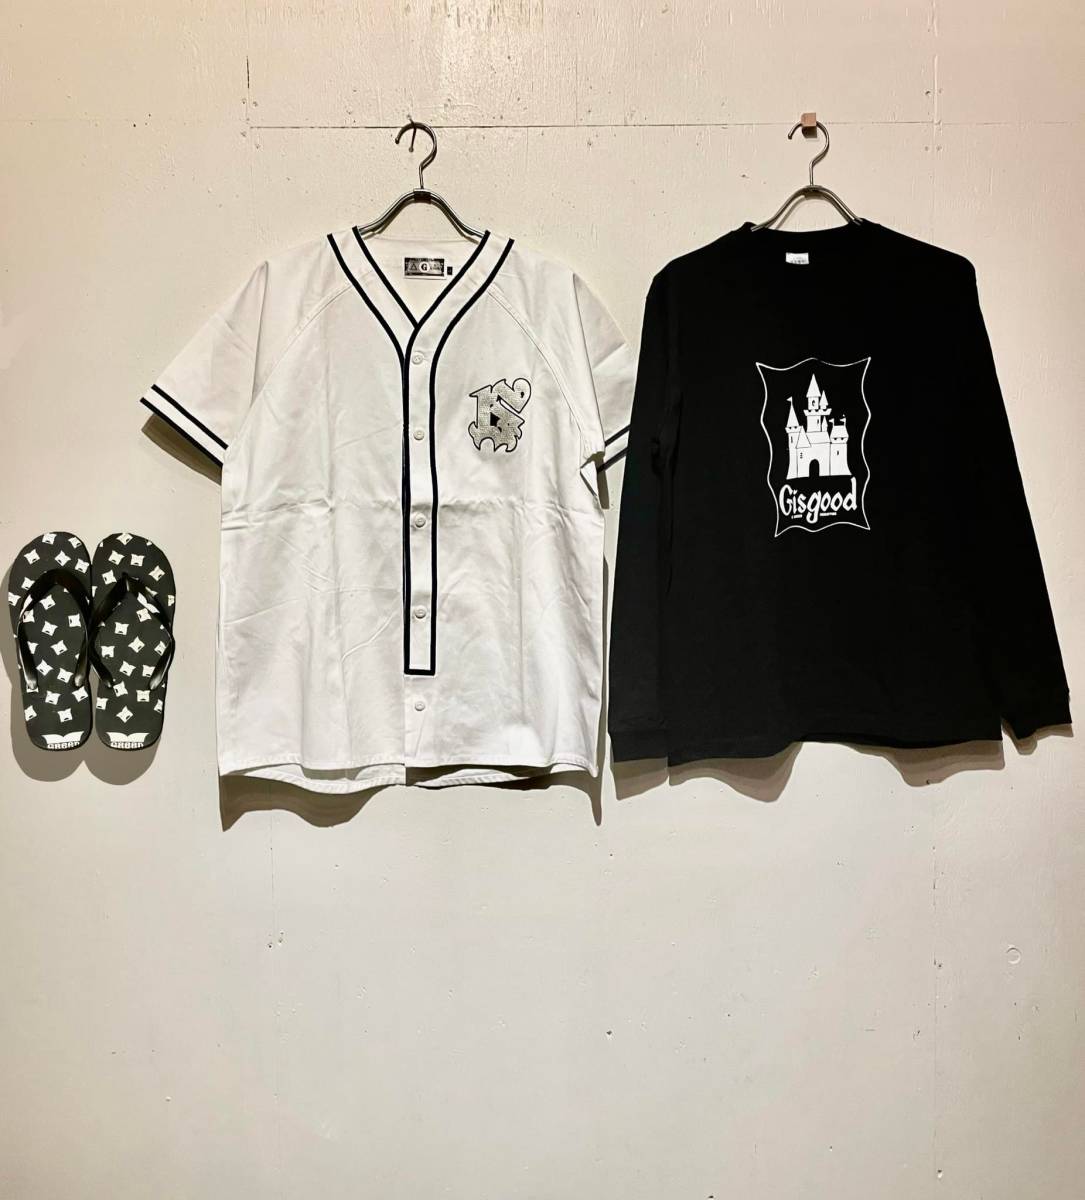 【新品3点SET】Gisgood KTデザインL/S Tシャツ(ブラック/L)、GReeD CASPERデザイン ベースボールシャツ(ホワイト/L)、ロゴサンダル(27.5cm)_画像1